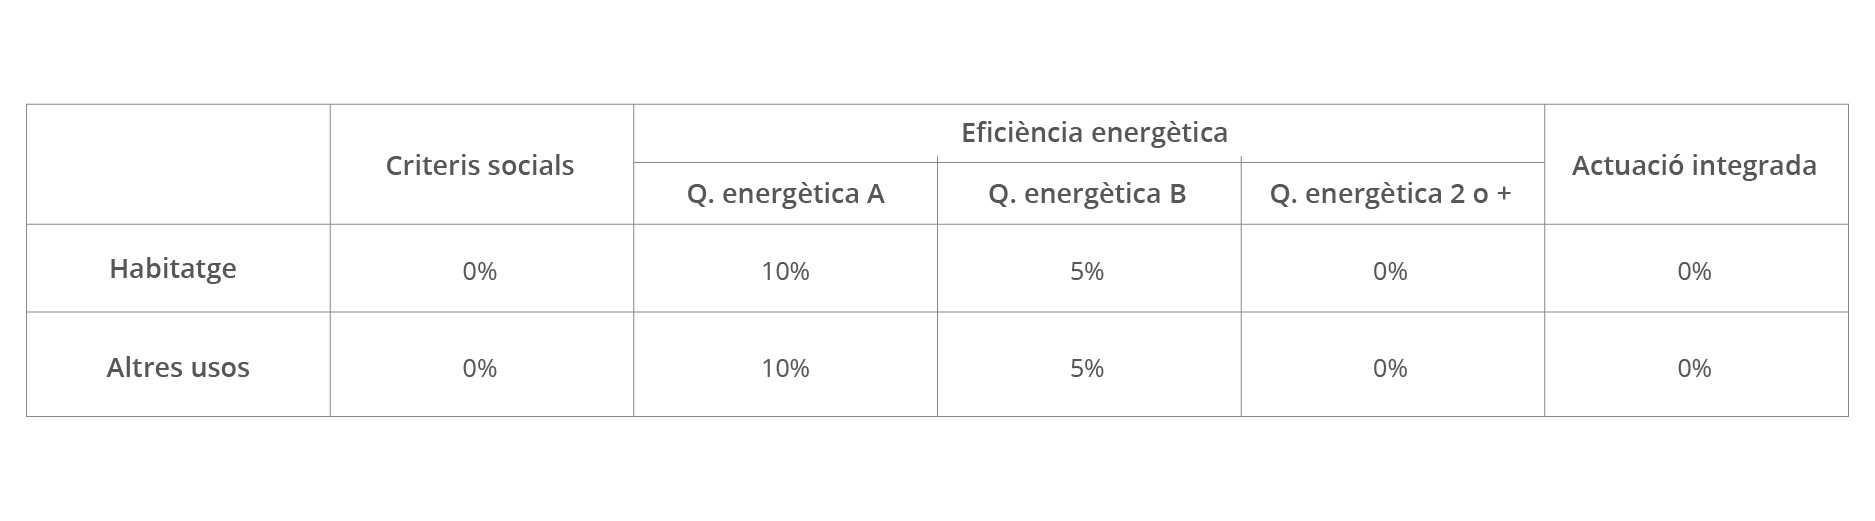 Ayudas-para-la-rehabilitación-energética-tipología-2.5-Mejora-de-la-eficiencia-energética-de-los-subsistemas-de-distribución-regulación-control-y-emisión-de-las-instalaciones-térmicas-fondos-FEDER-ICAEN-gencat-cataluña-PREE